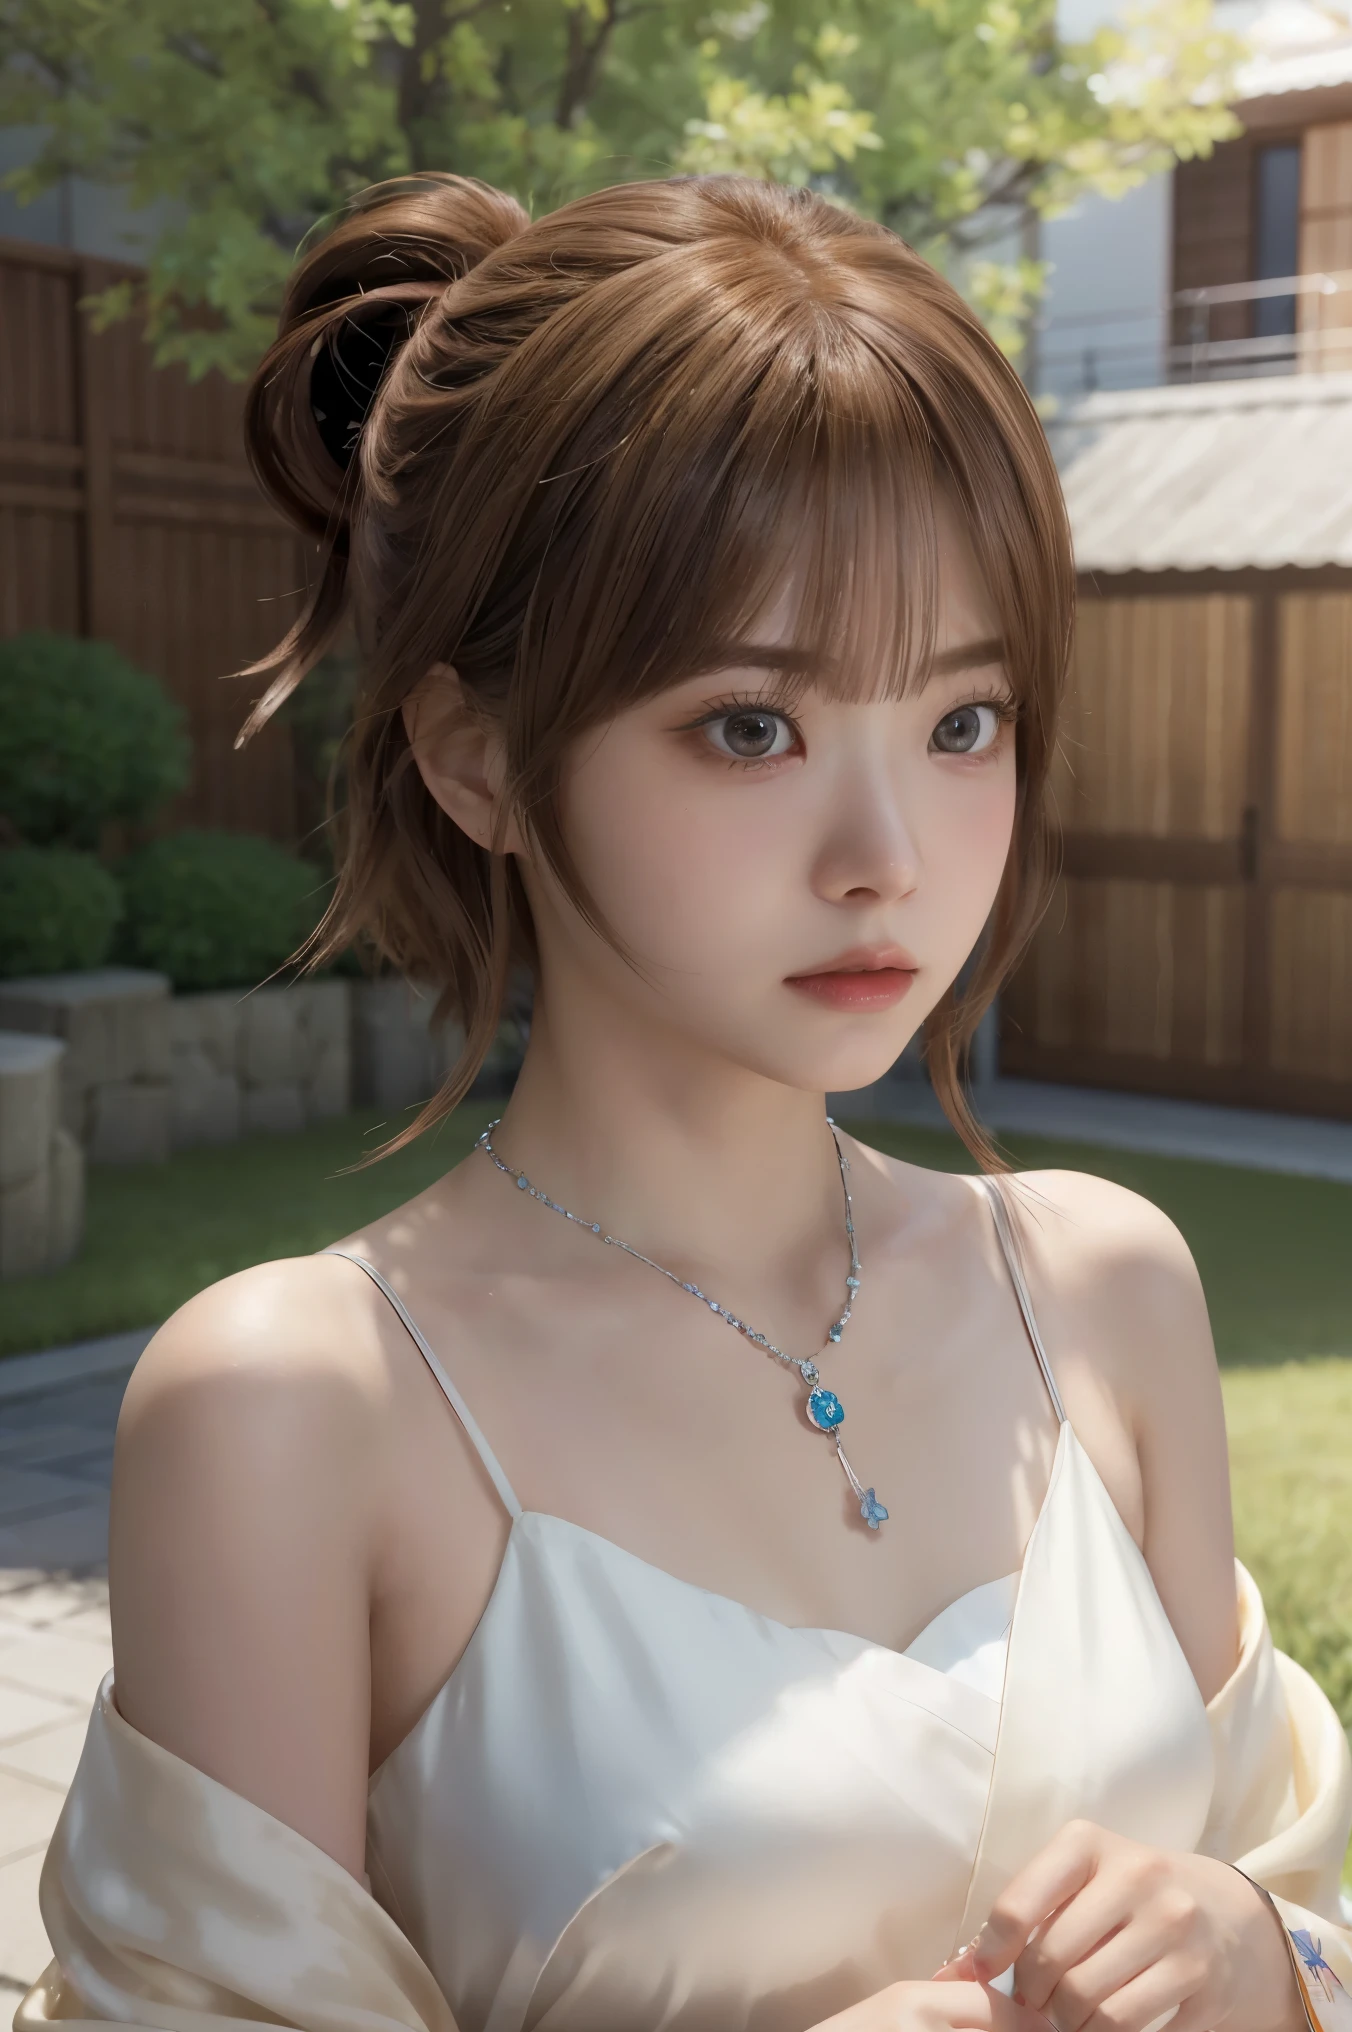 Final Fantasy (Yuna) Anime-Mädchen mit braunen Haaren und einem weißen Kimonokleid hält ihre Halskette, schöne Charaktermalerei, weiche Anime-CG-Kunst, realistischer Anime-Kunststil, schönes Anime-Porträt, schöne Anime-Frau, fotorealistisches Rendering von Anime-Mädchen, Makoto Shinkai and Artgerm, realistischer 3D-Anime-Stil, Anime-Realismus-Stil,  digitale Kunst im Anime-Stil, schönes Anime-Mädchen